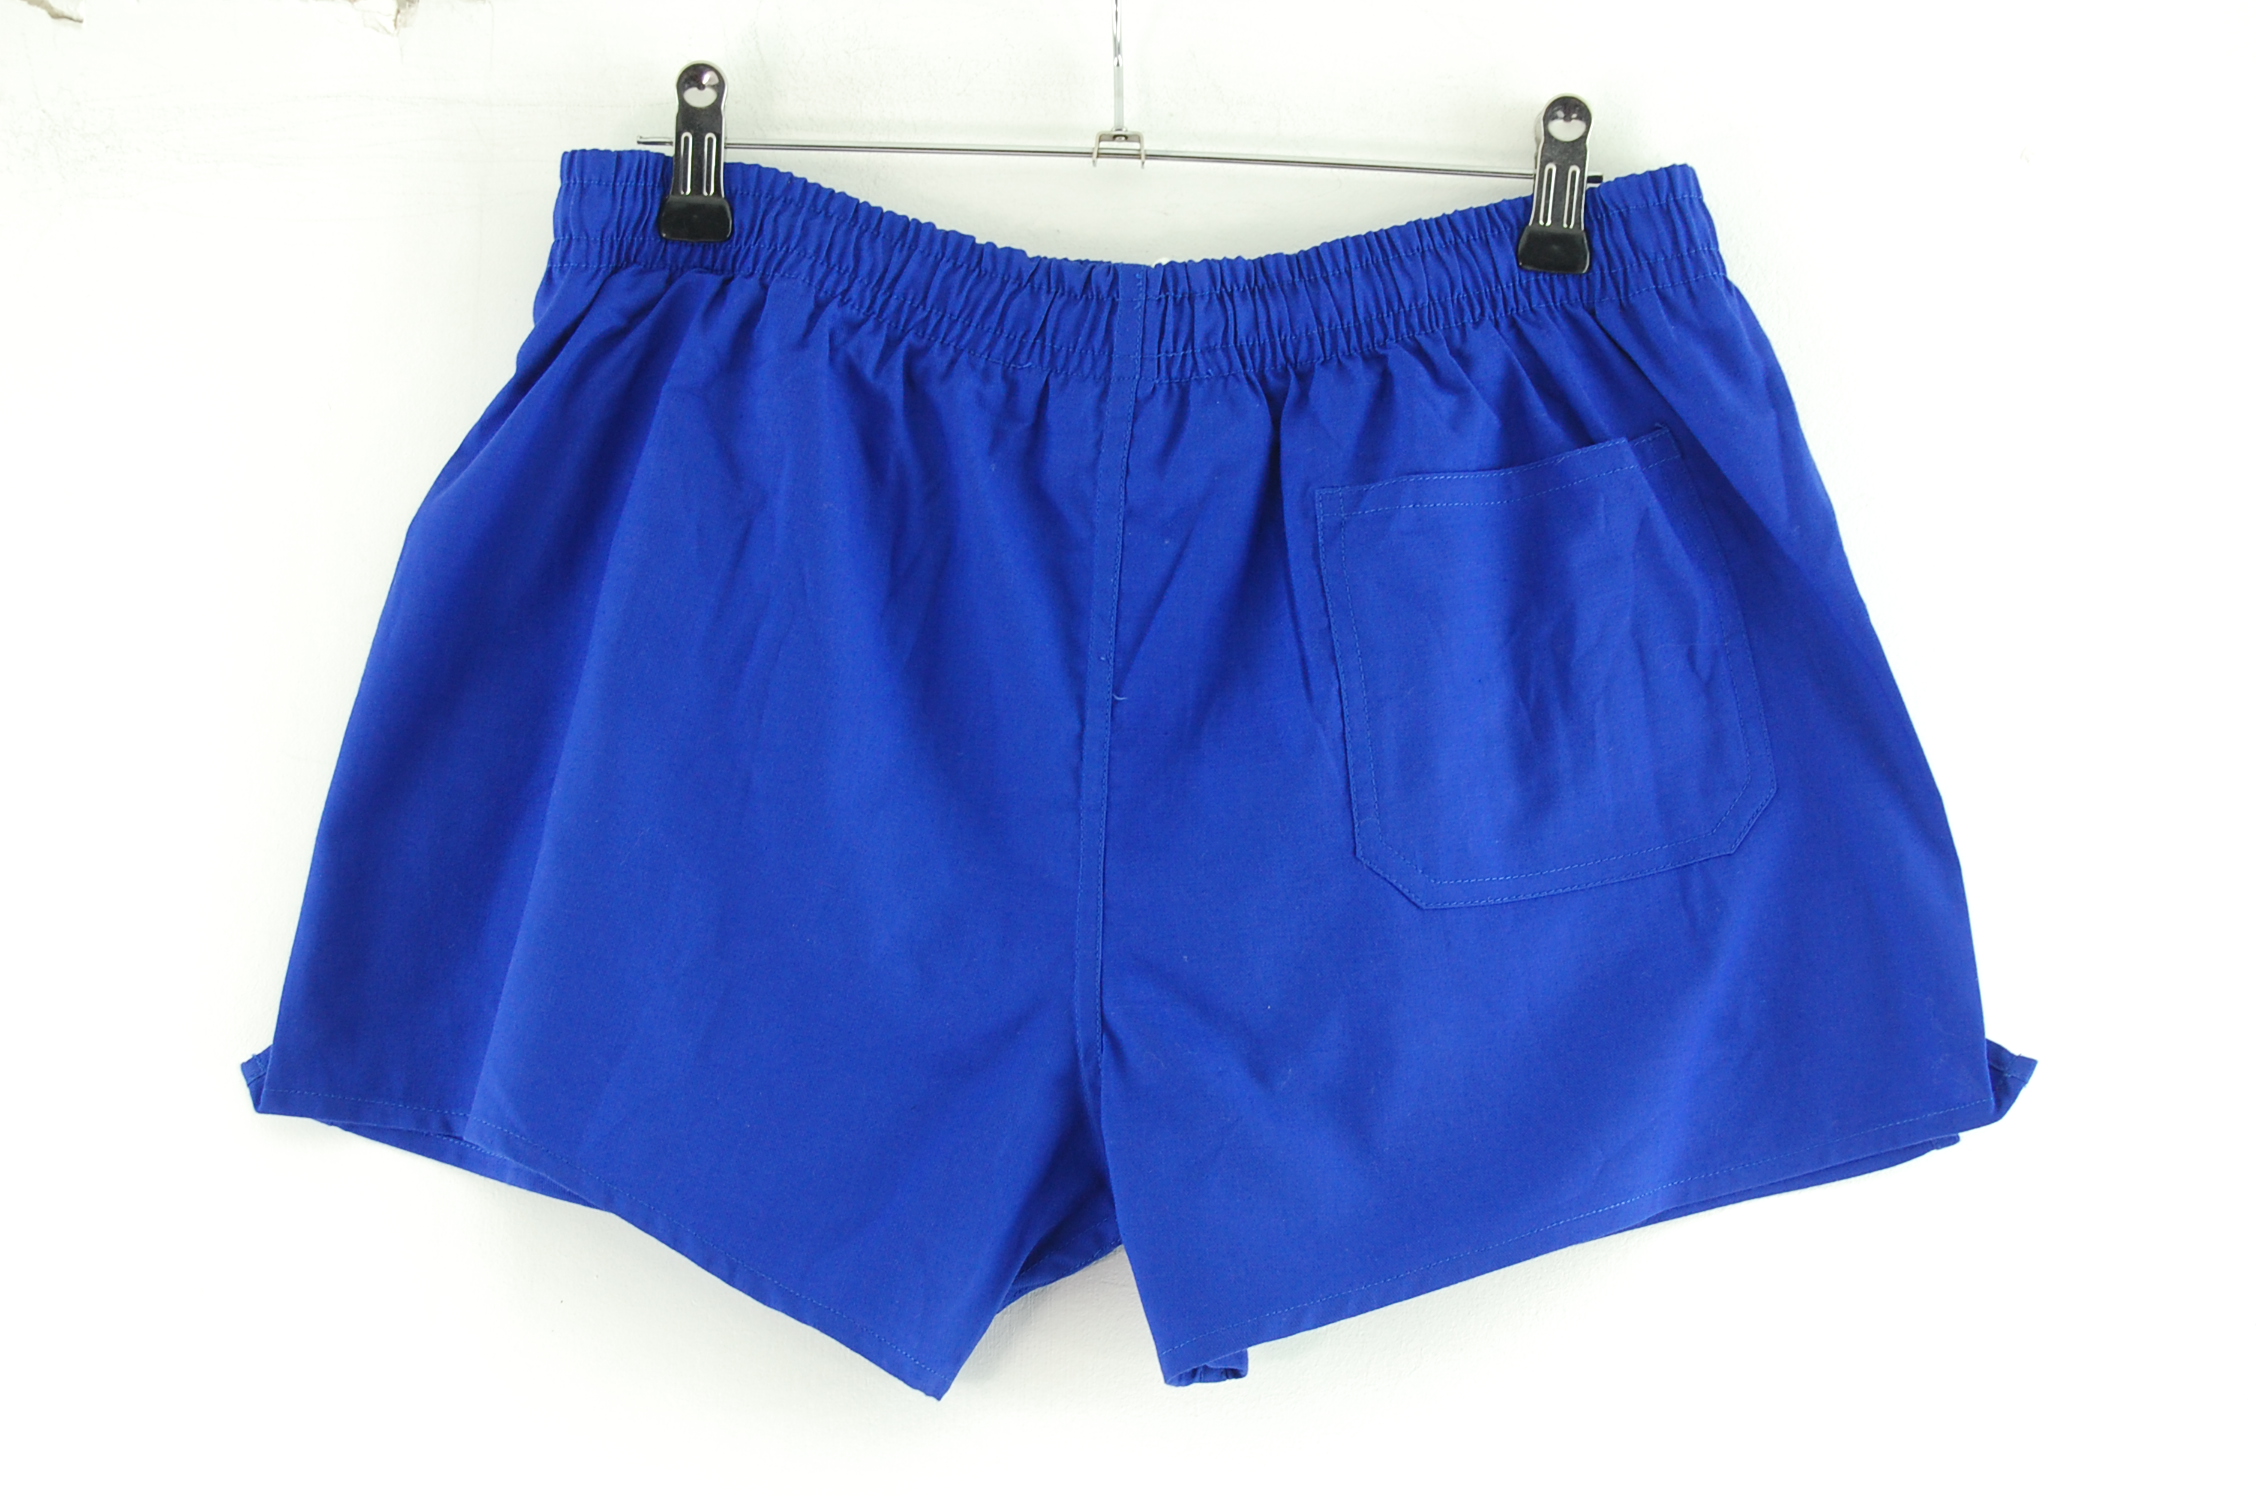 Blue Sports Shorts - UK S - Blue 17 Vintage Clothing